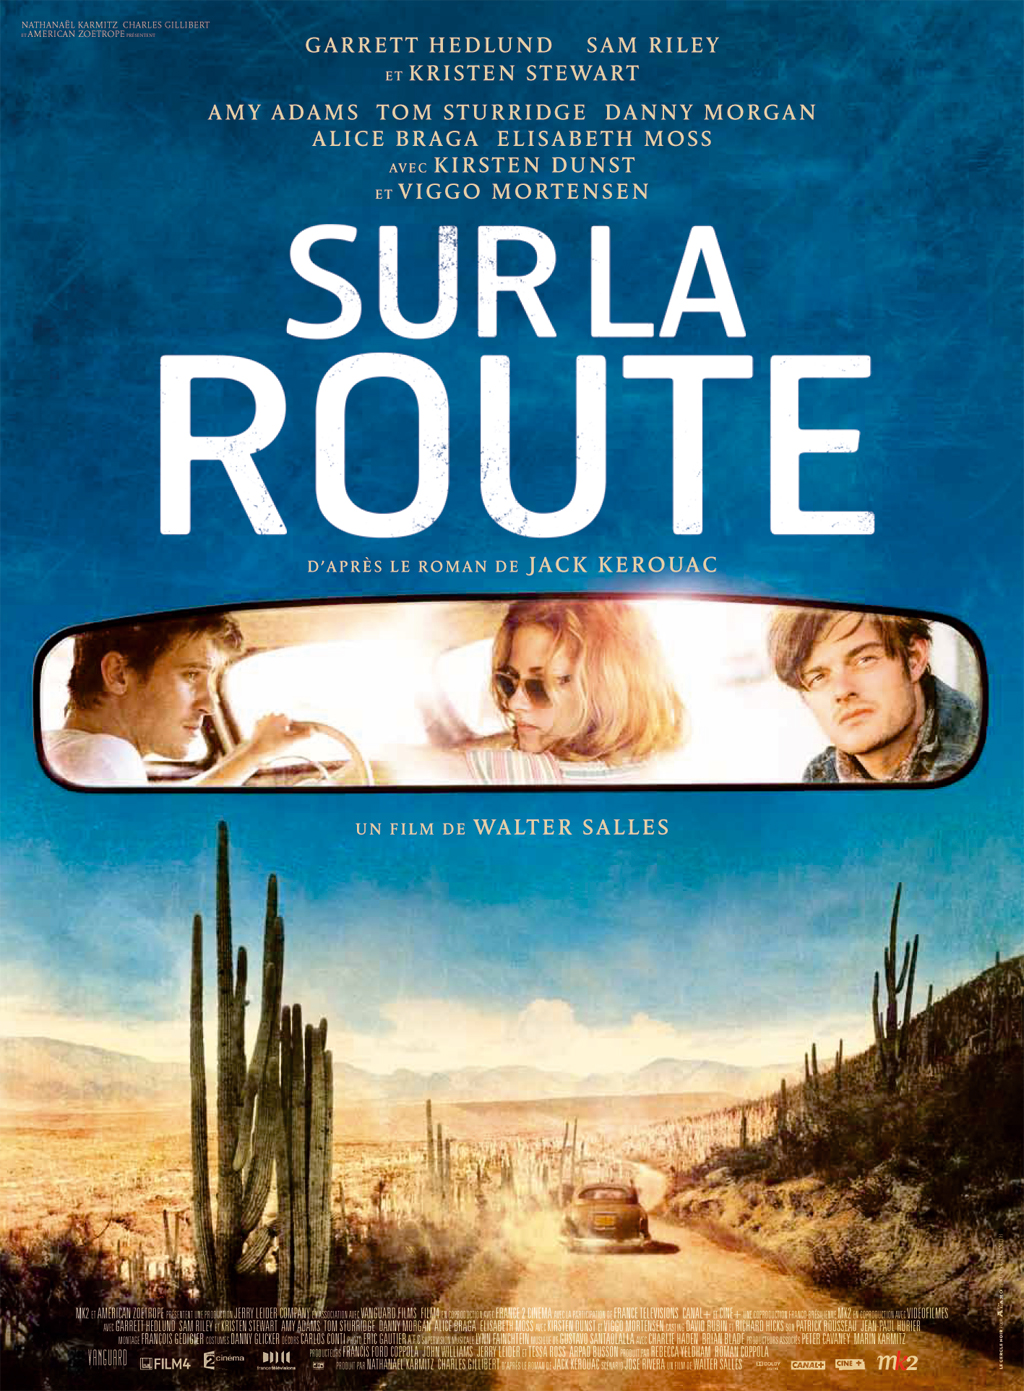 Sur la route (Film, 2012) — CinéSérie